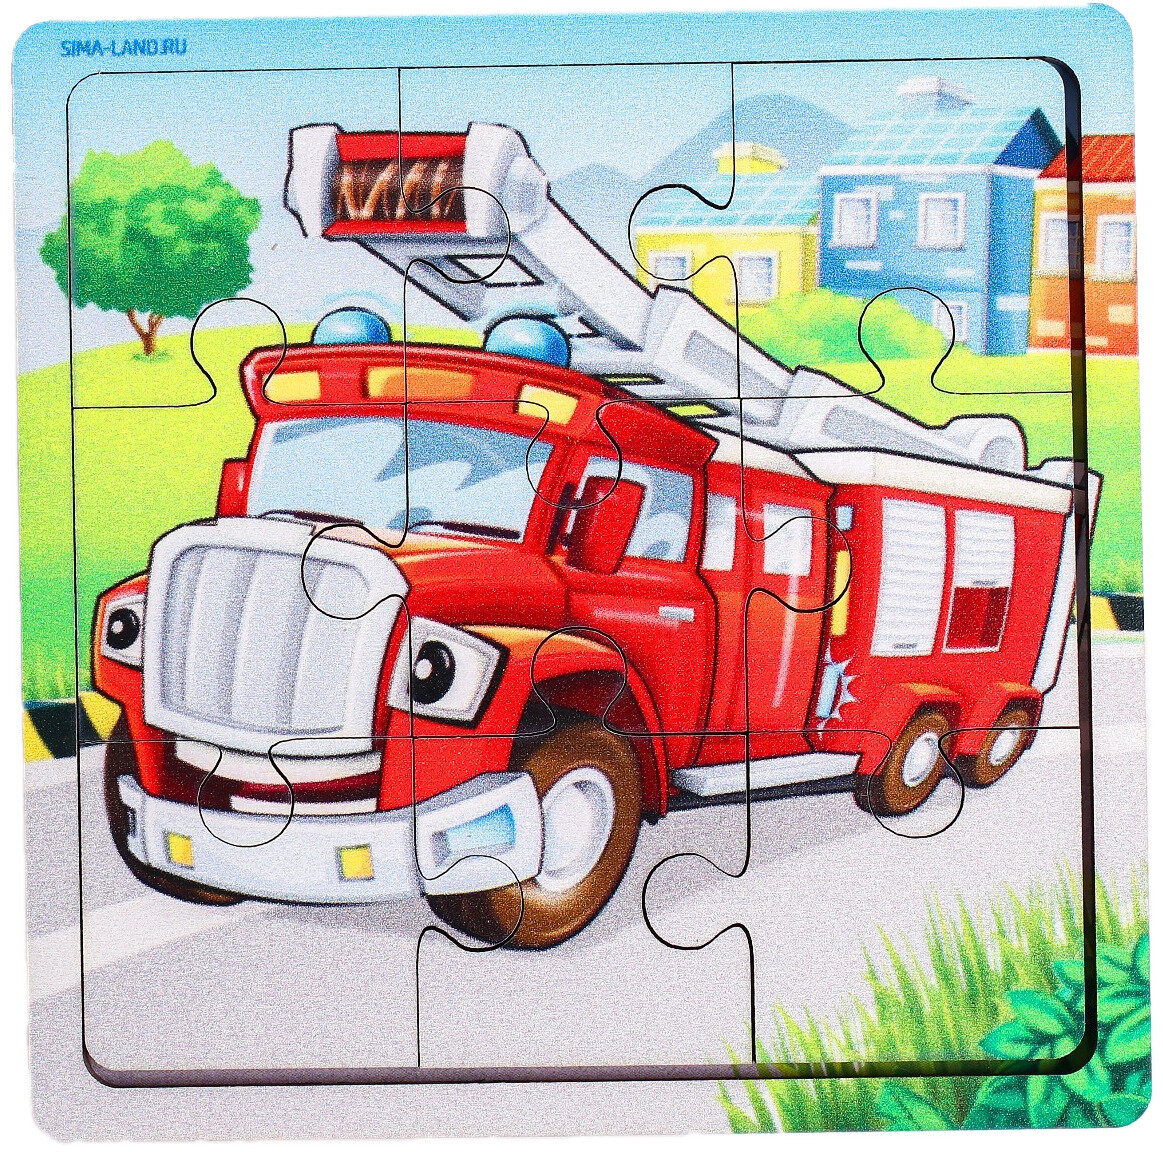 Развивающий пазл "Пожарная машина", деревянная рамка-вкладыш, детская головоломка, 9 деталей